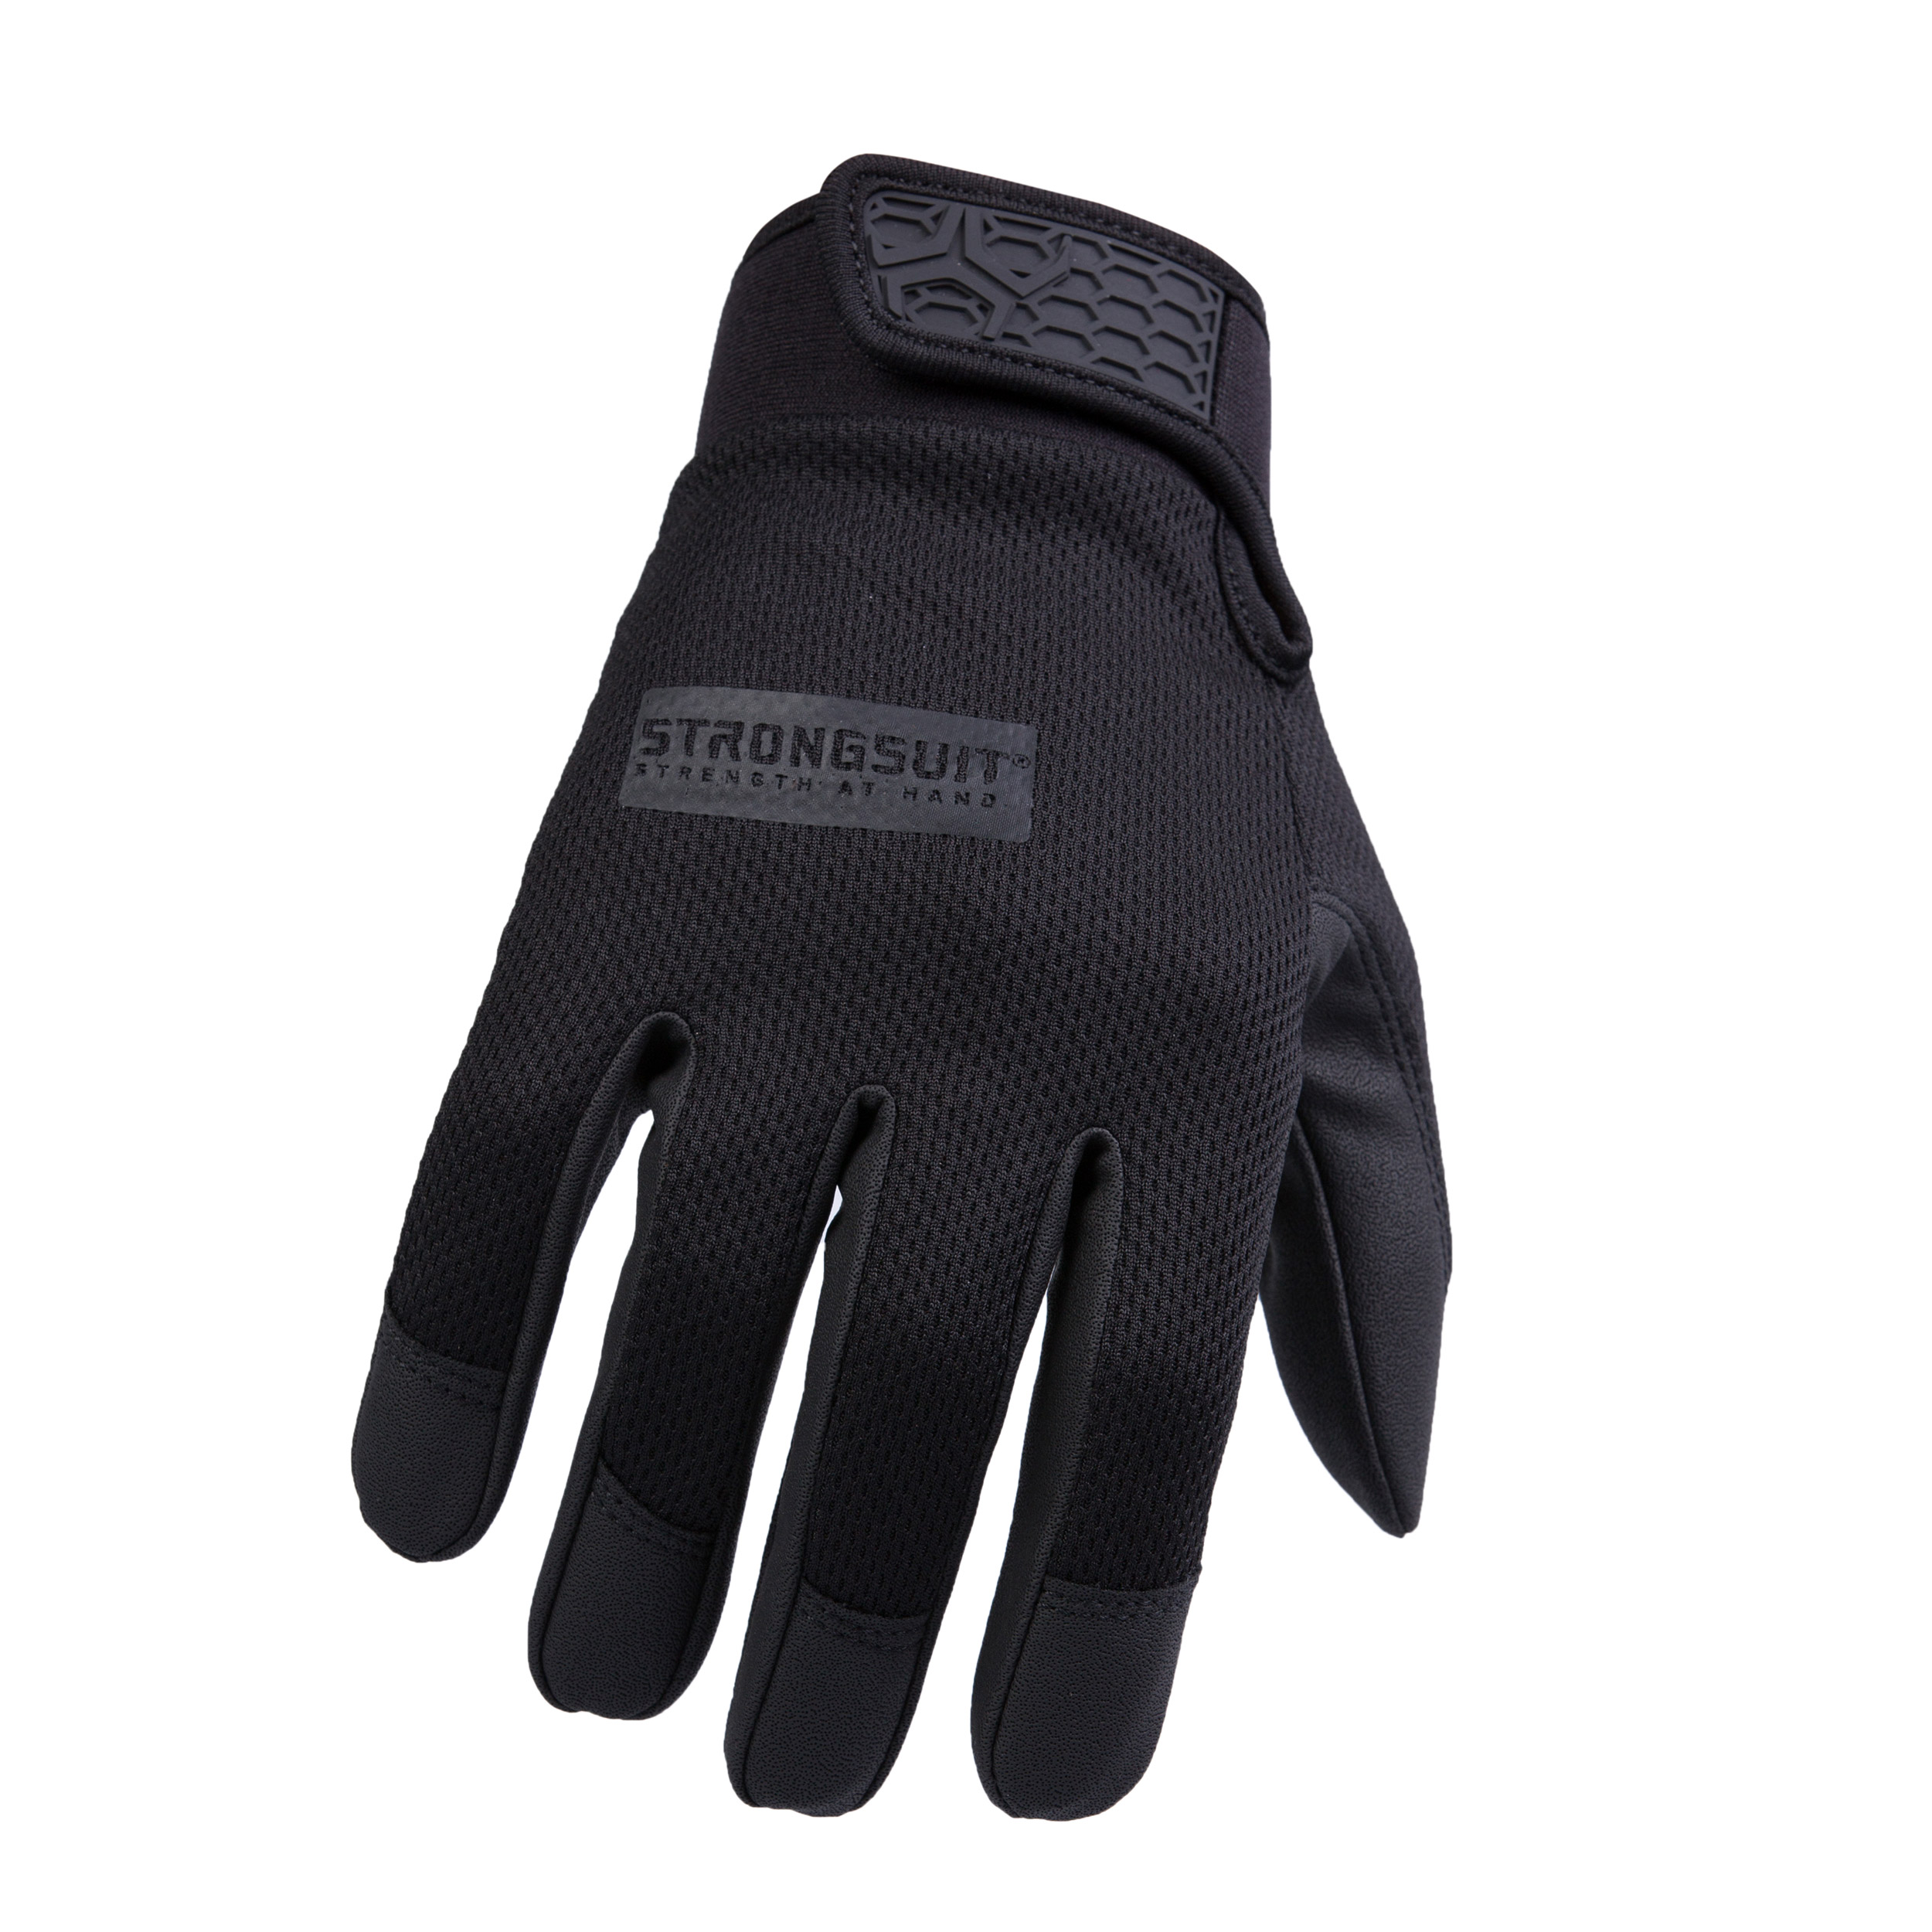 Second Skin Gloves Black Gloves Xxl